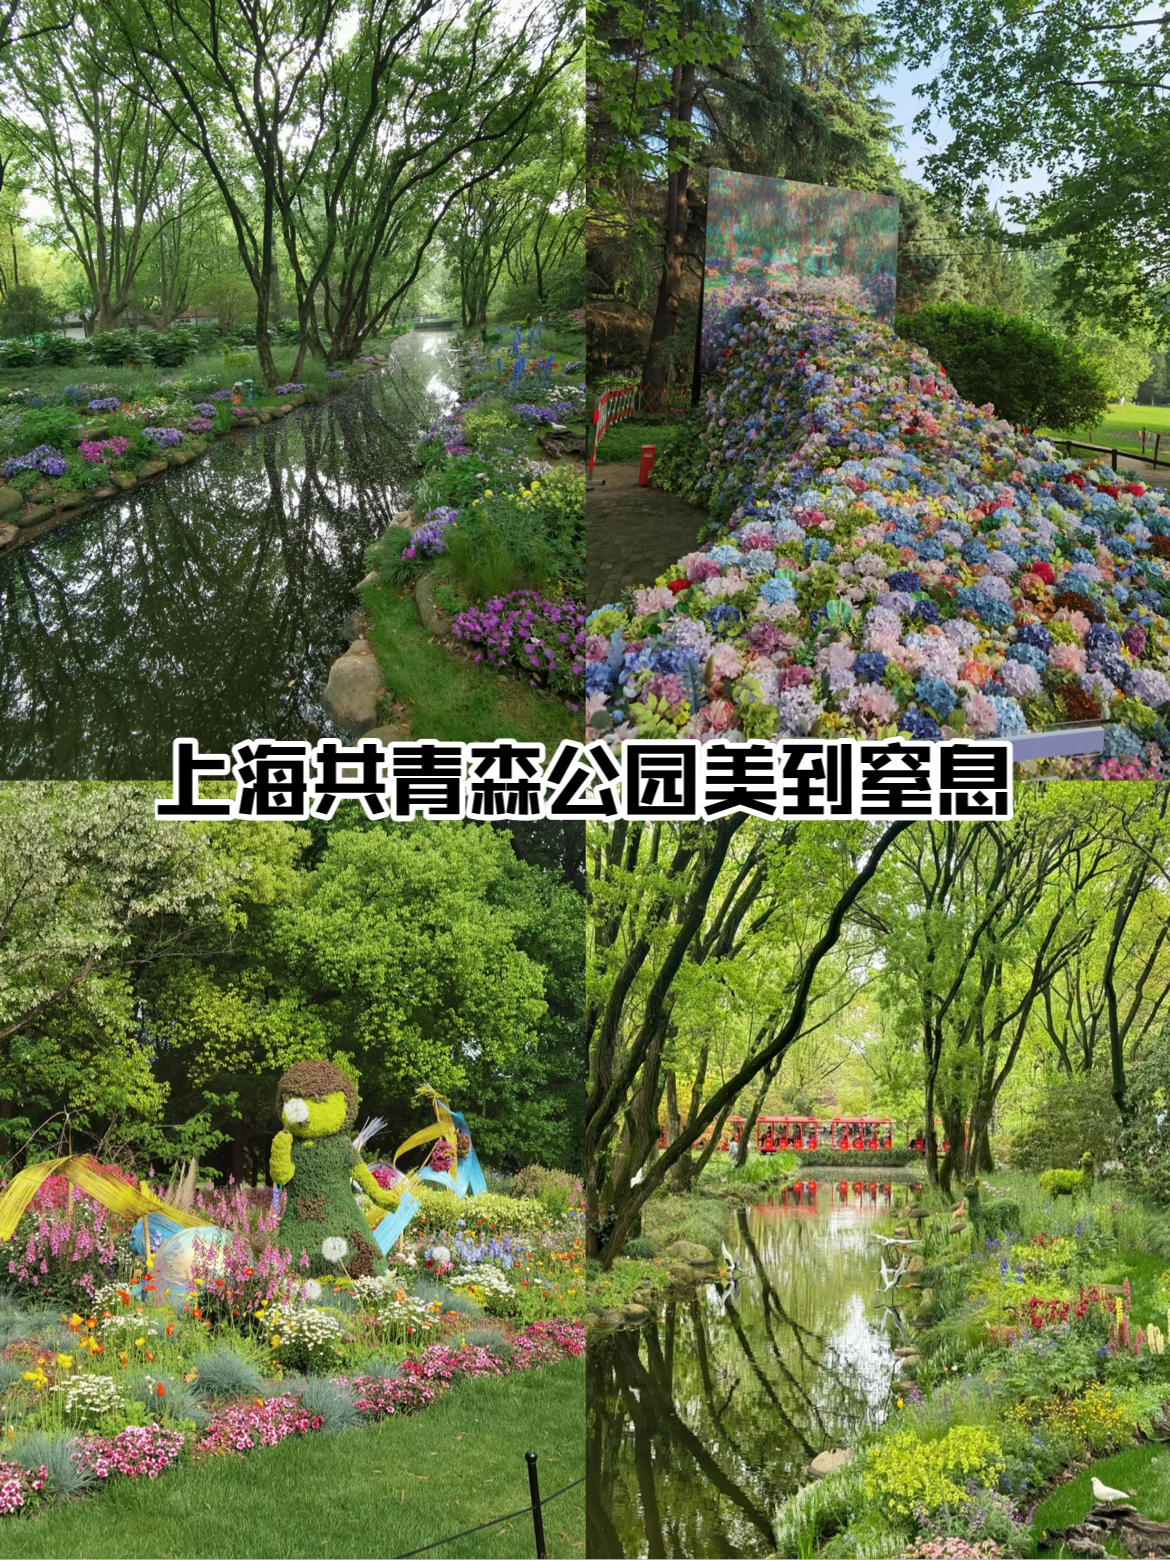 上海已经共青森林公园美到窒息!  共青森林公园今年的花展  真的太美啦  百花齐放  红色的小火车鸣